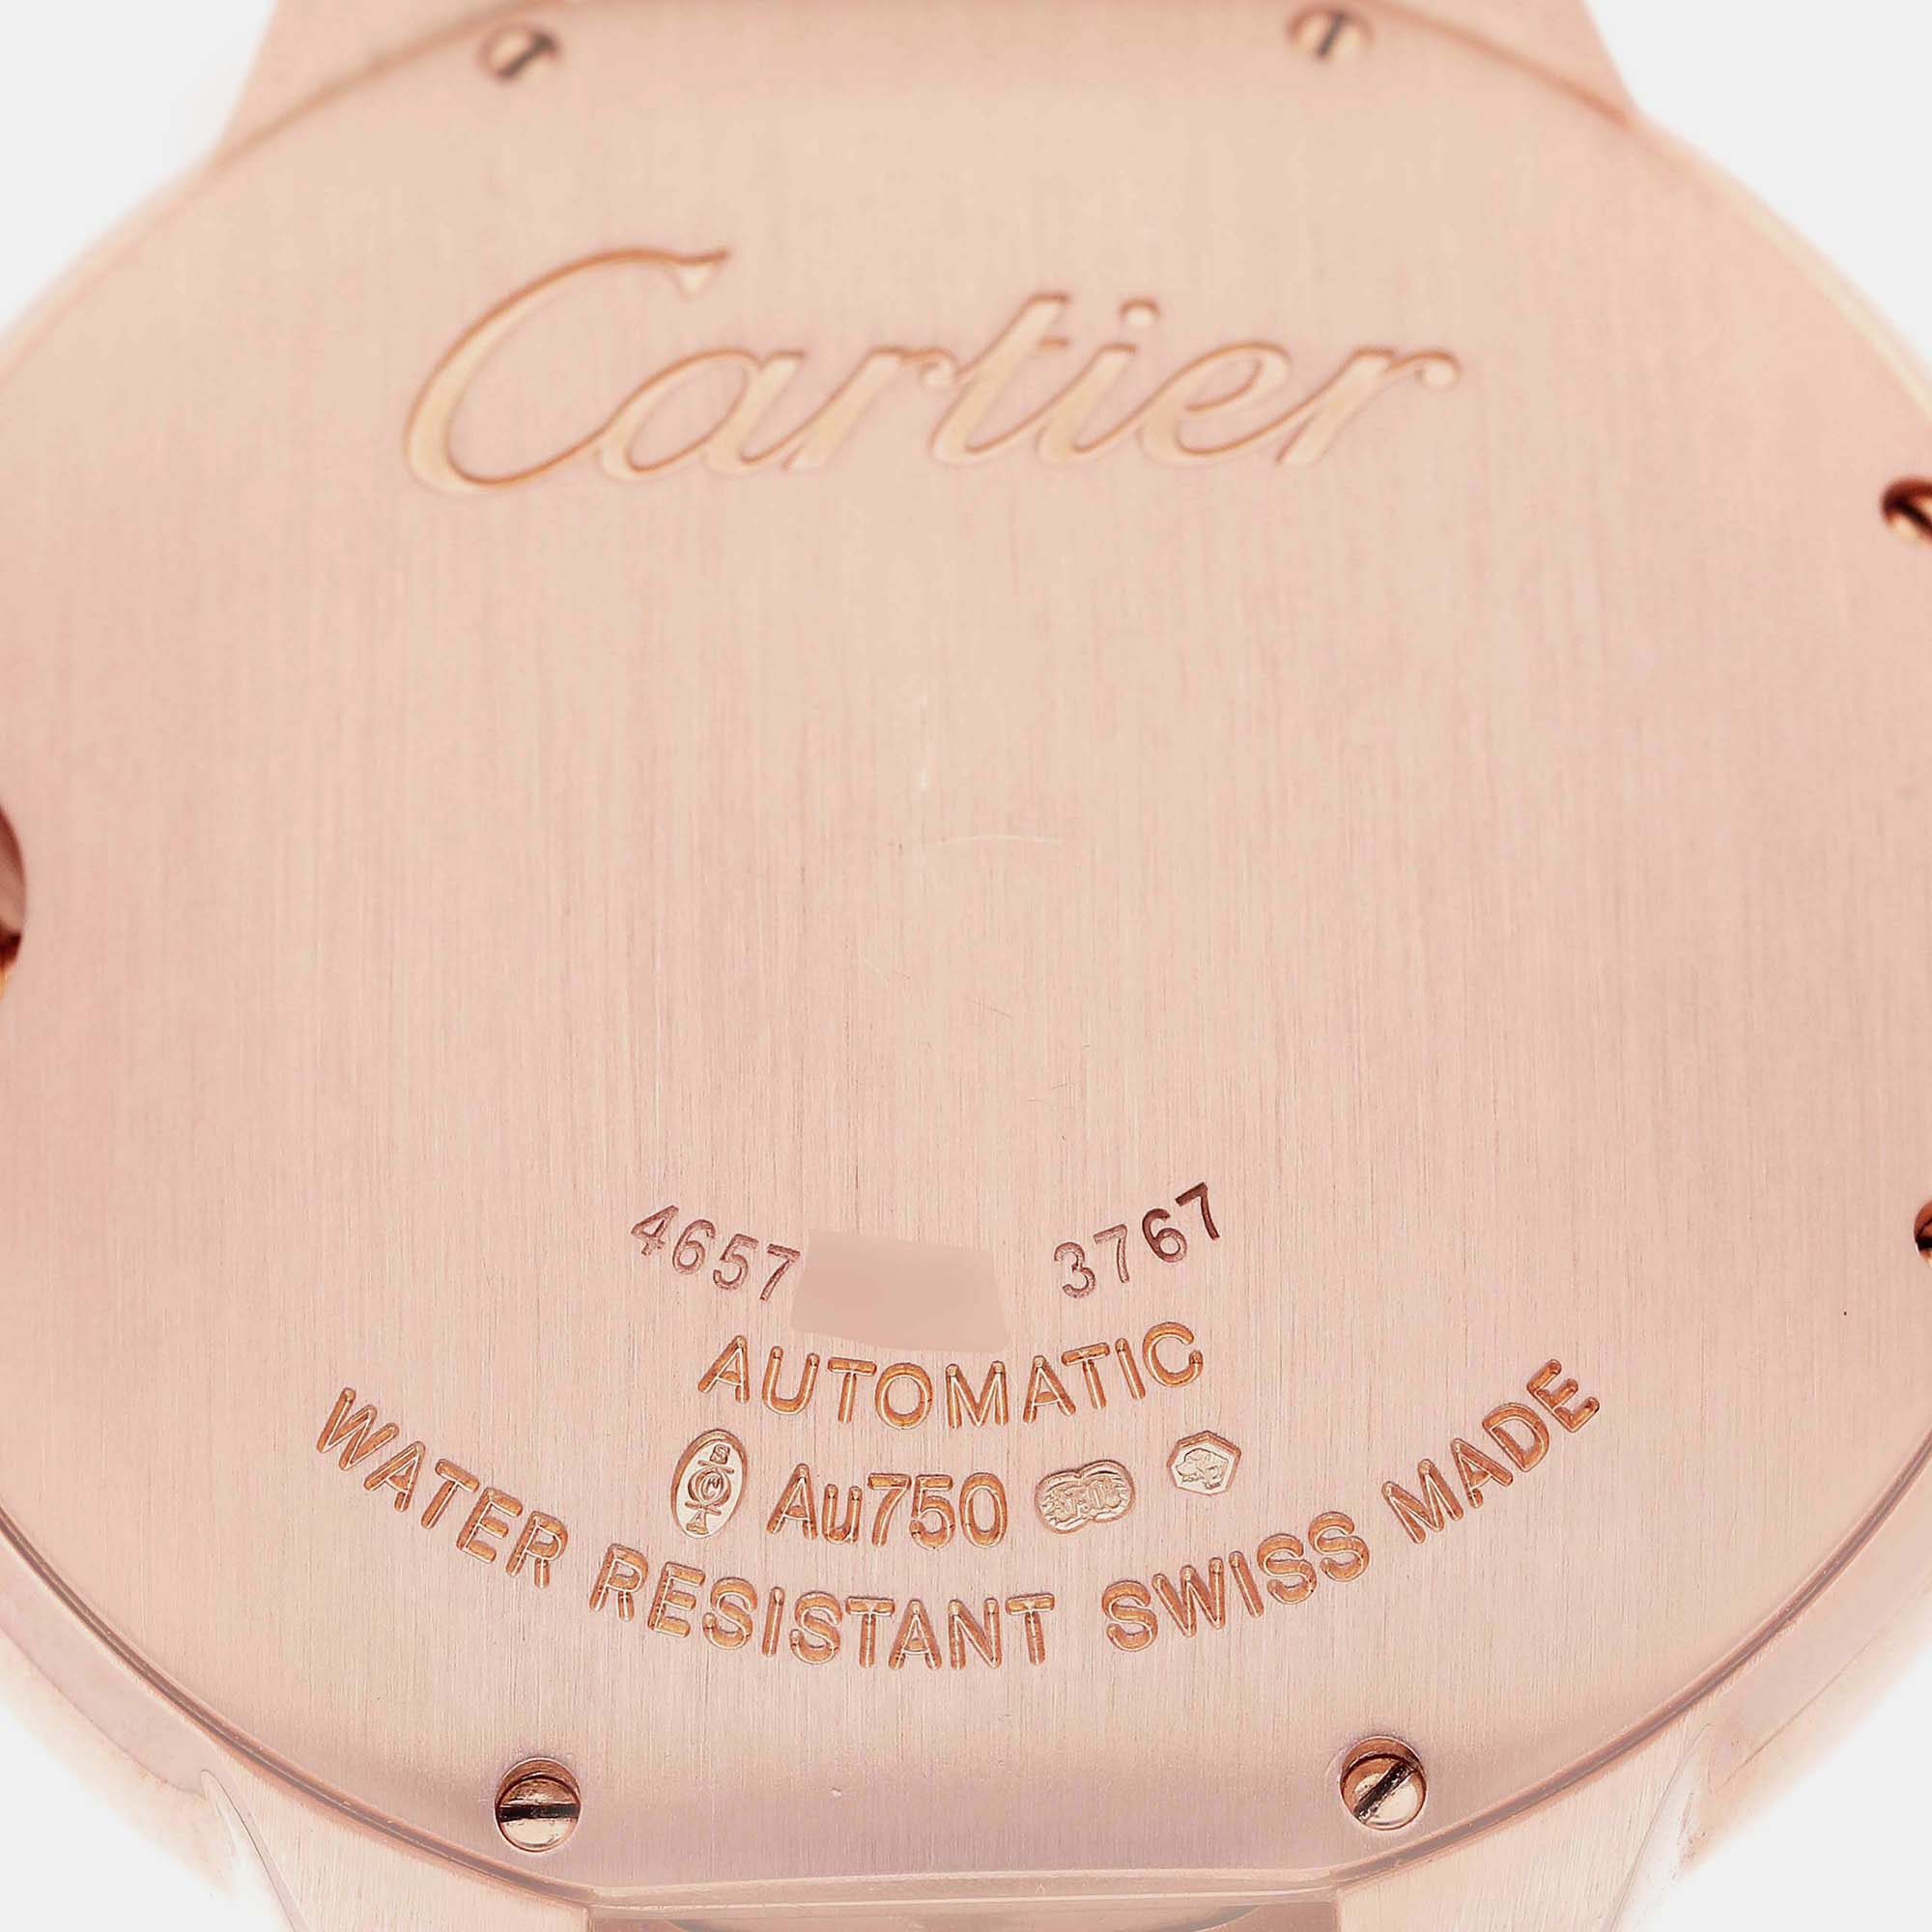 Cartier Ballon Bleu Rose Gold Automatic Men's Watch W69006Z2 42 Mm